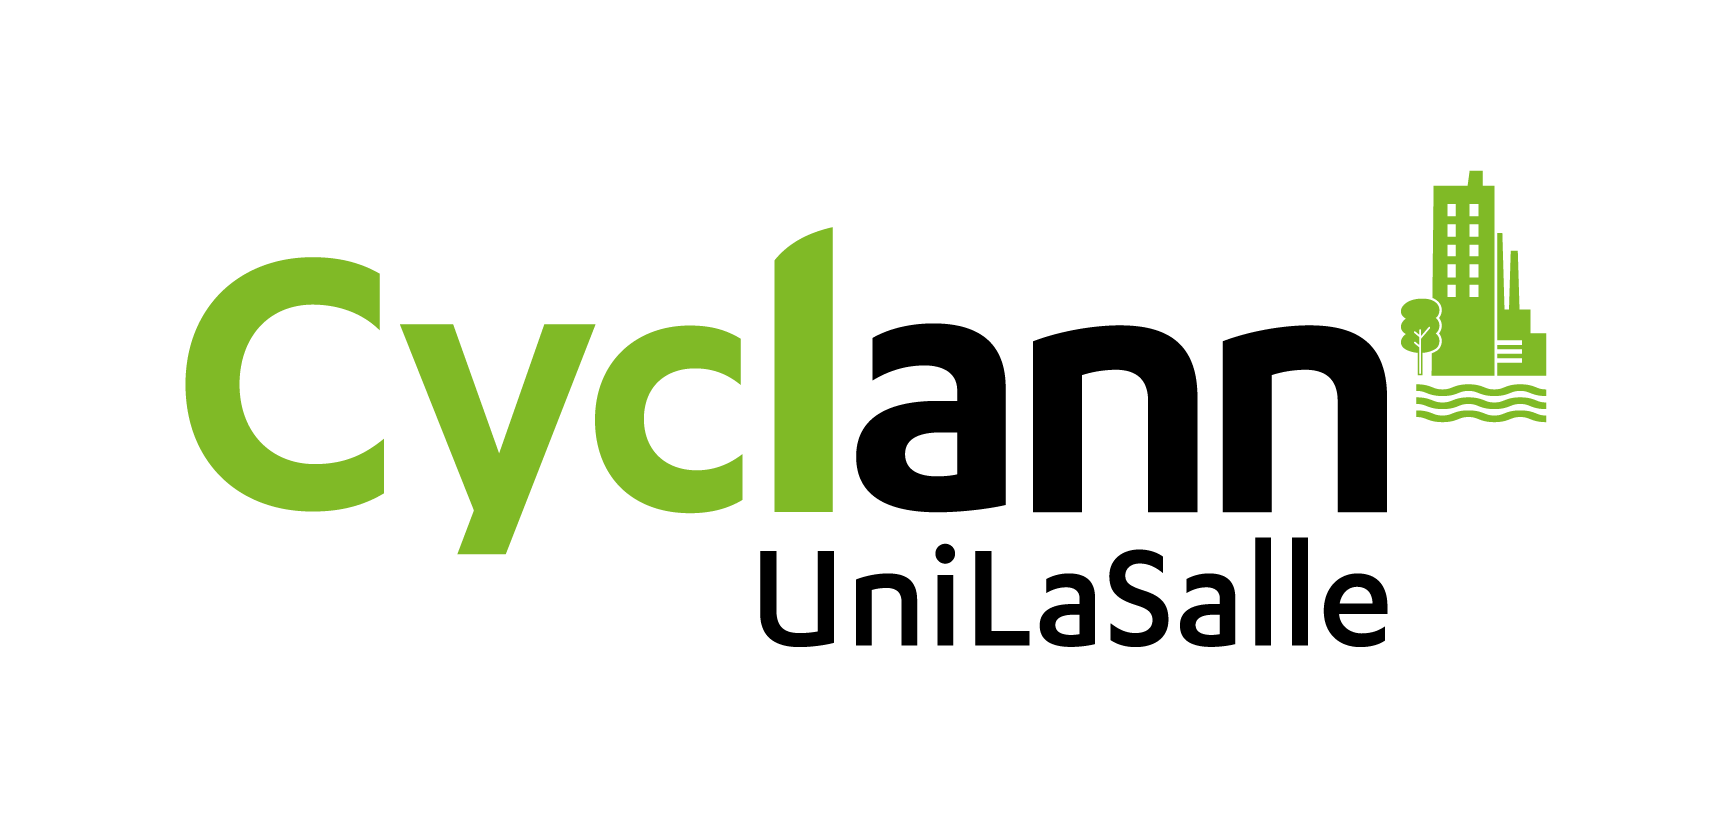 Nouveau logo Cyclann UniLaSalle Rennes